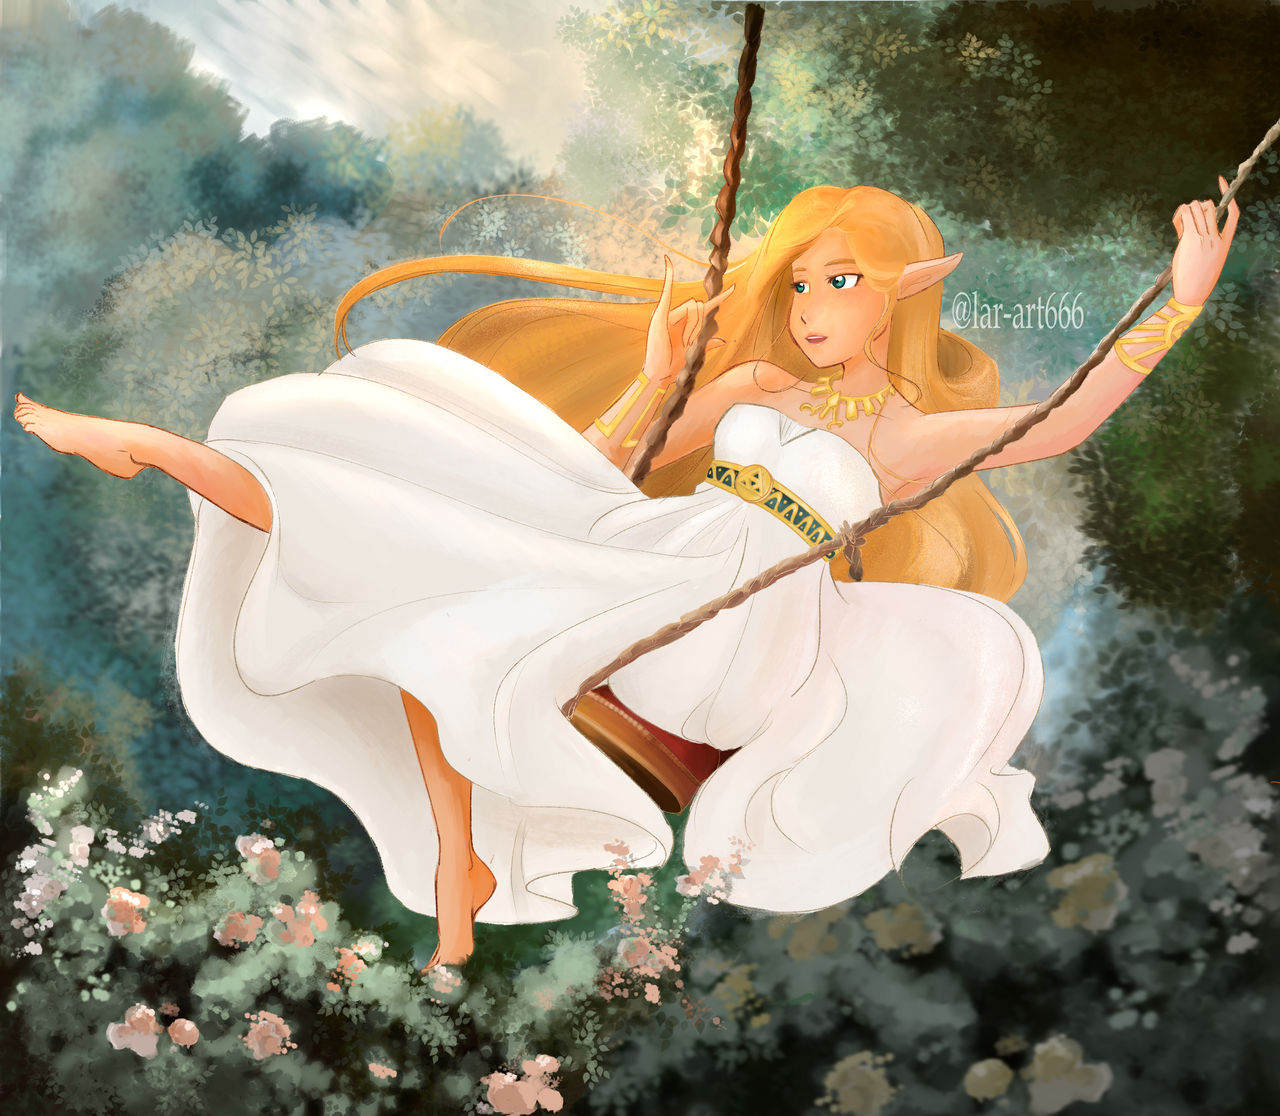 Fan Inspired Princess Zelda dress by auress on DeviantArt